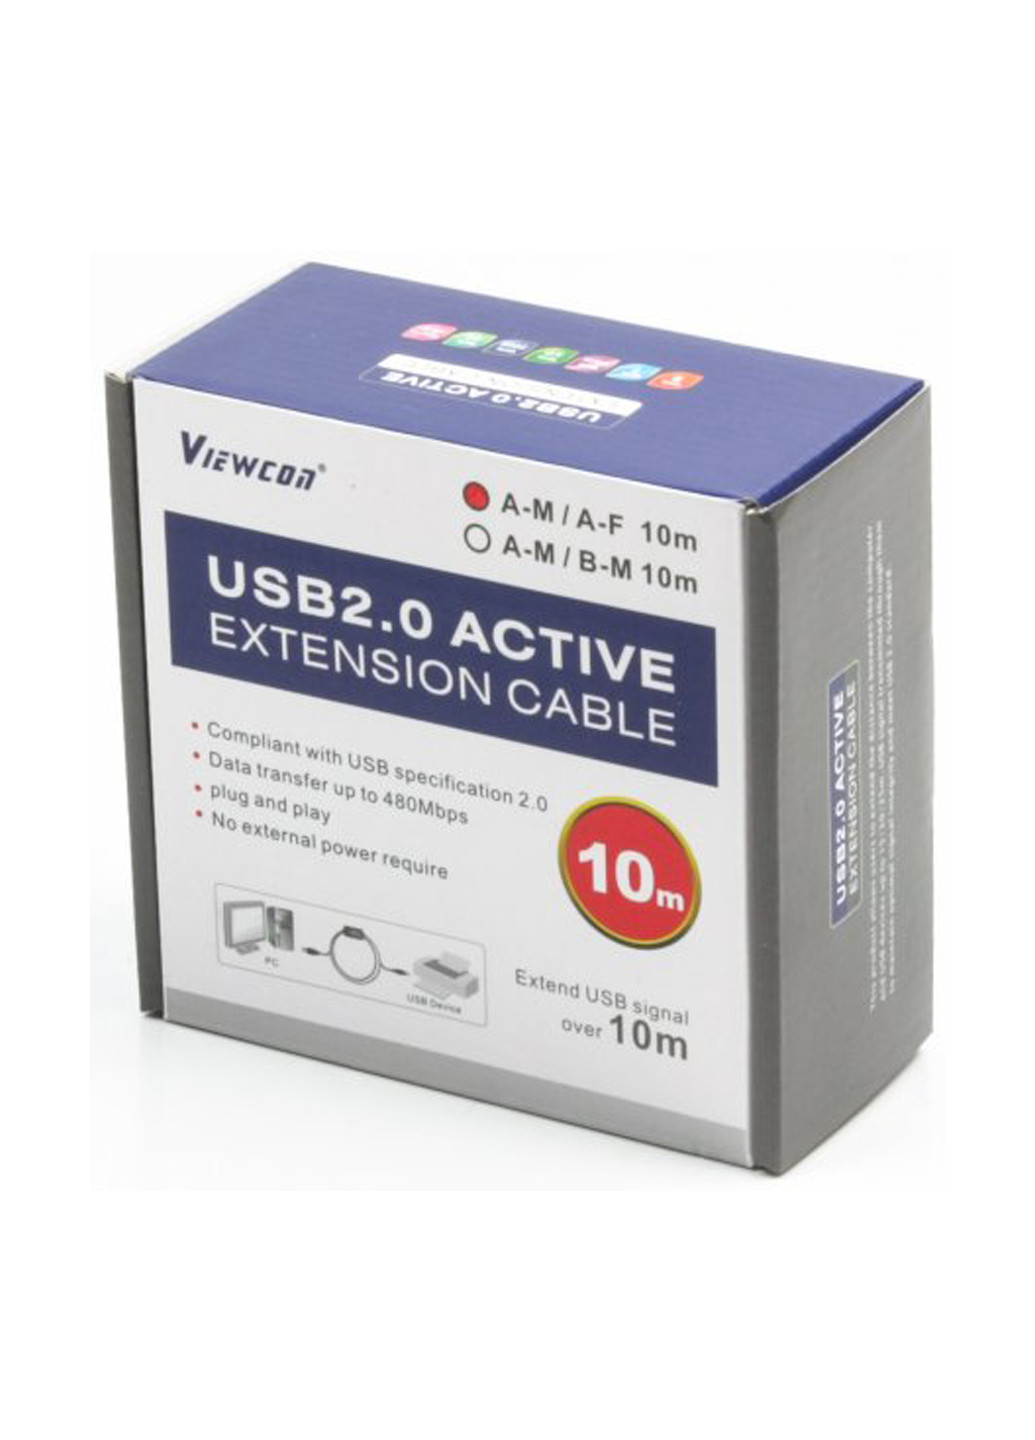 Активний подовжувач USB2.0 AM / AF 10м. (VV043-10M) Viewcon активный удлинитель usb2.0 am/af 10м. (vv043-10m) (137703591)